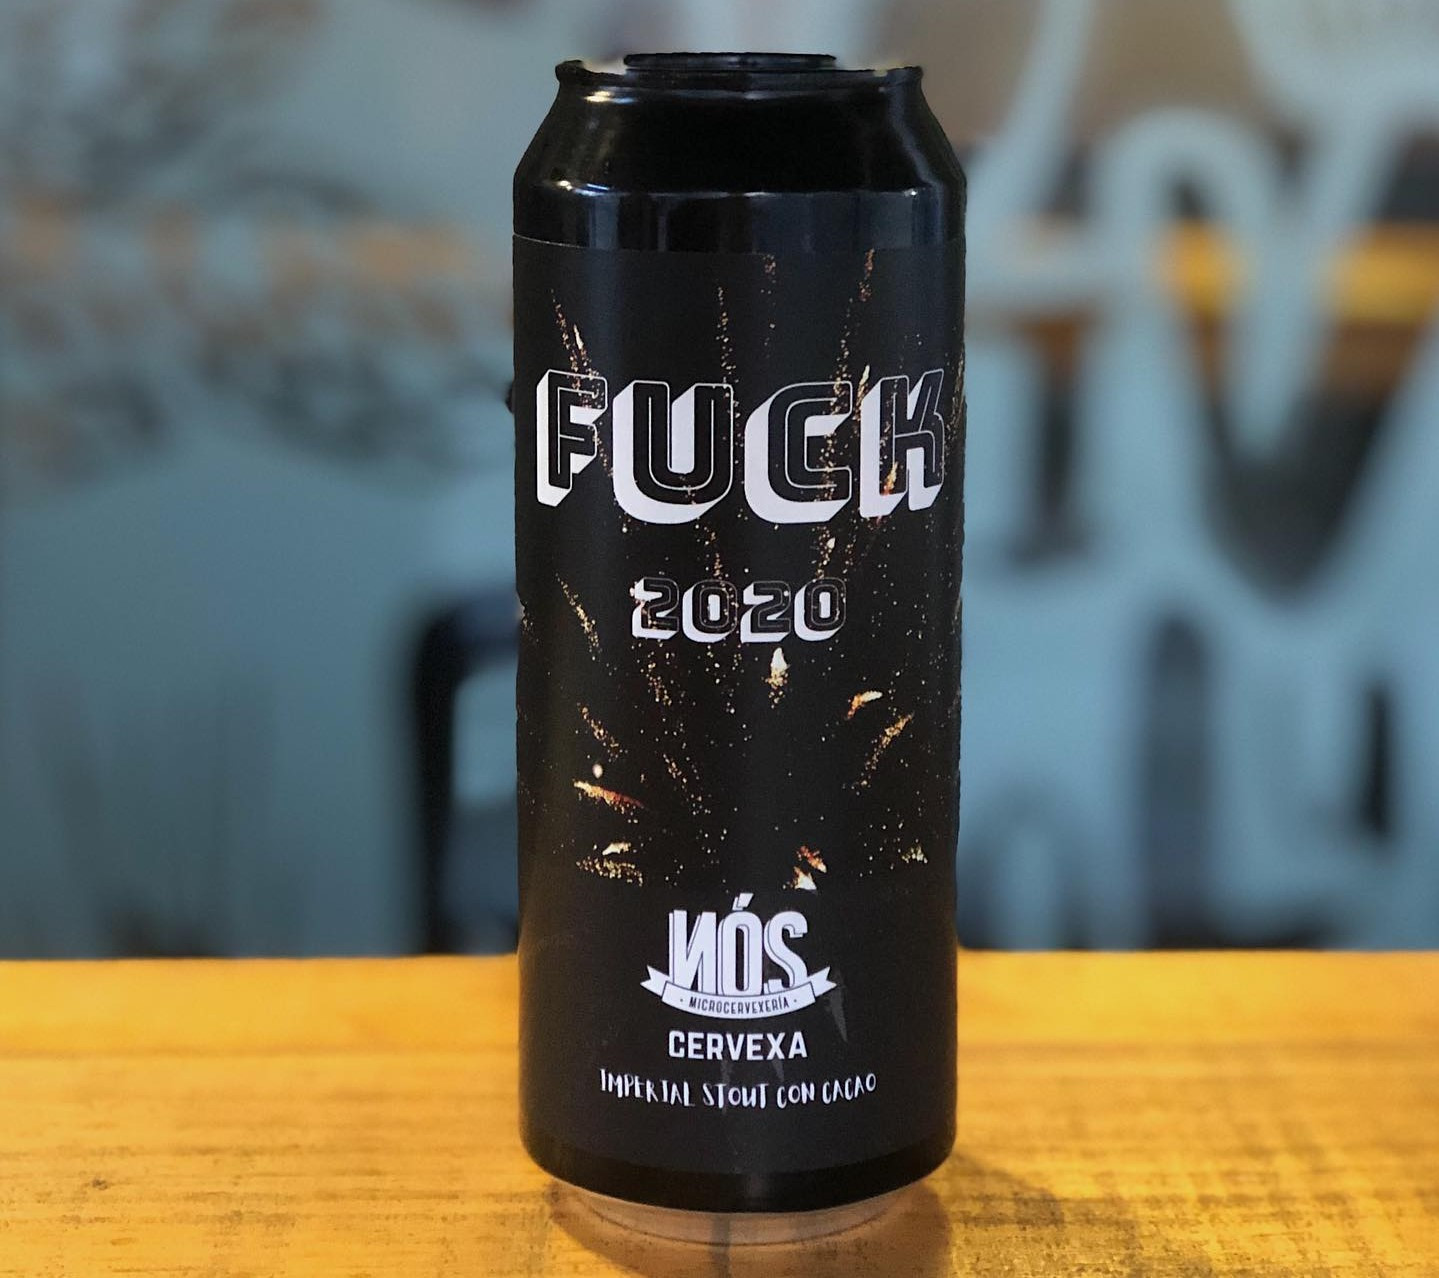 Edición limitada Fuck 2020, de Cervexa Nós